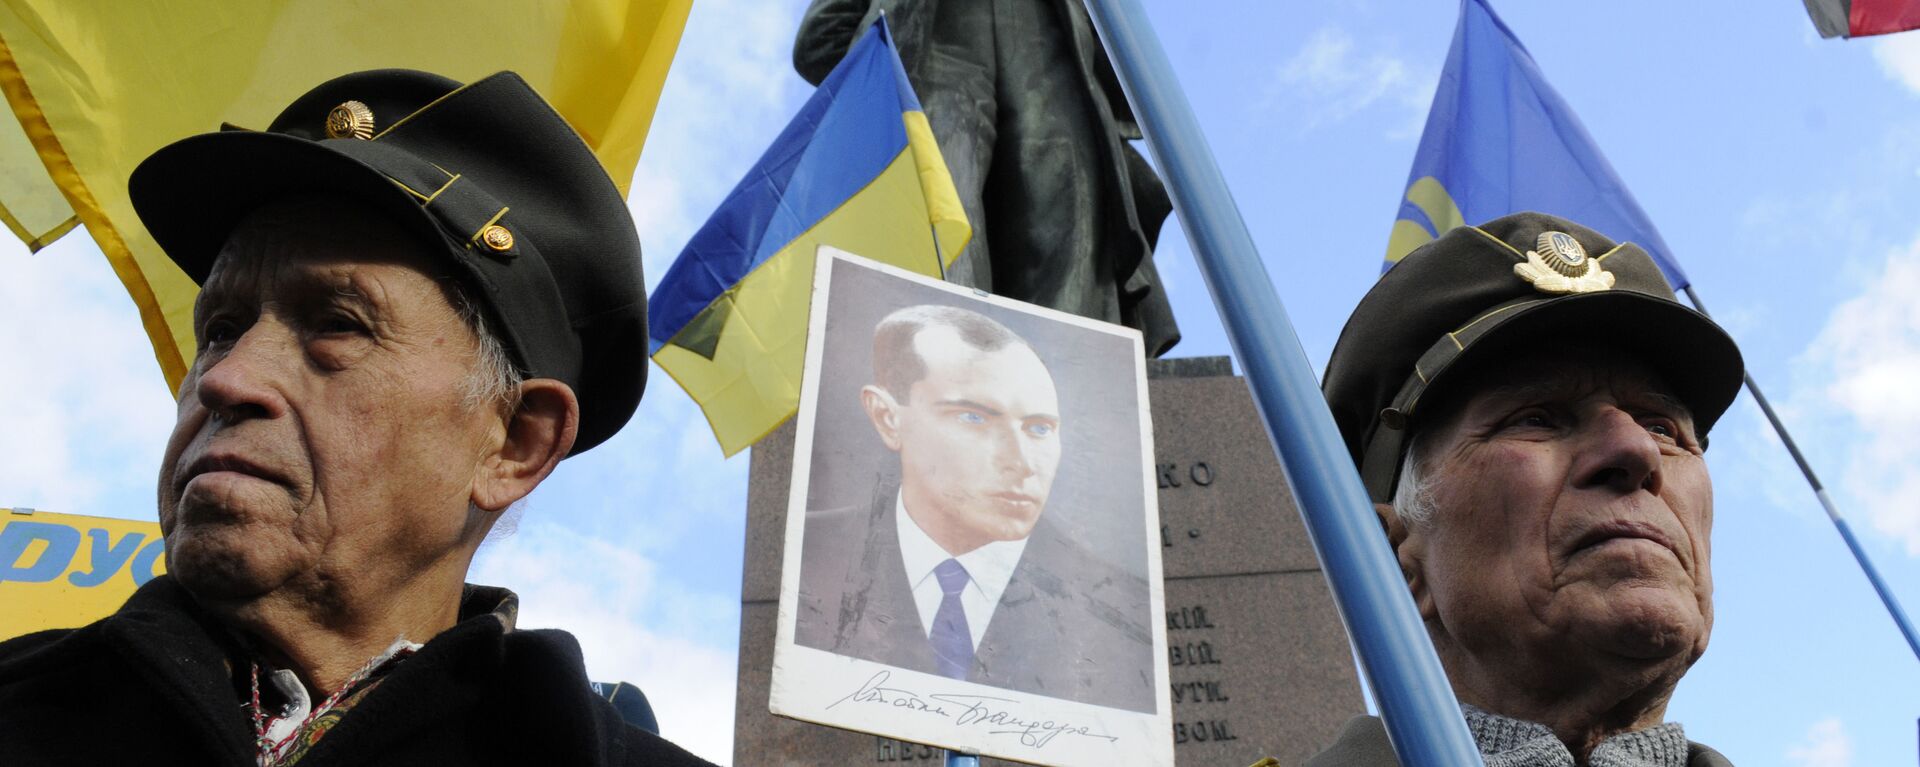 Украјински националисти са сликом Степана Бандере - Sputnik Србија, 1920, 29.08.2021